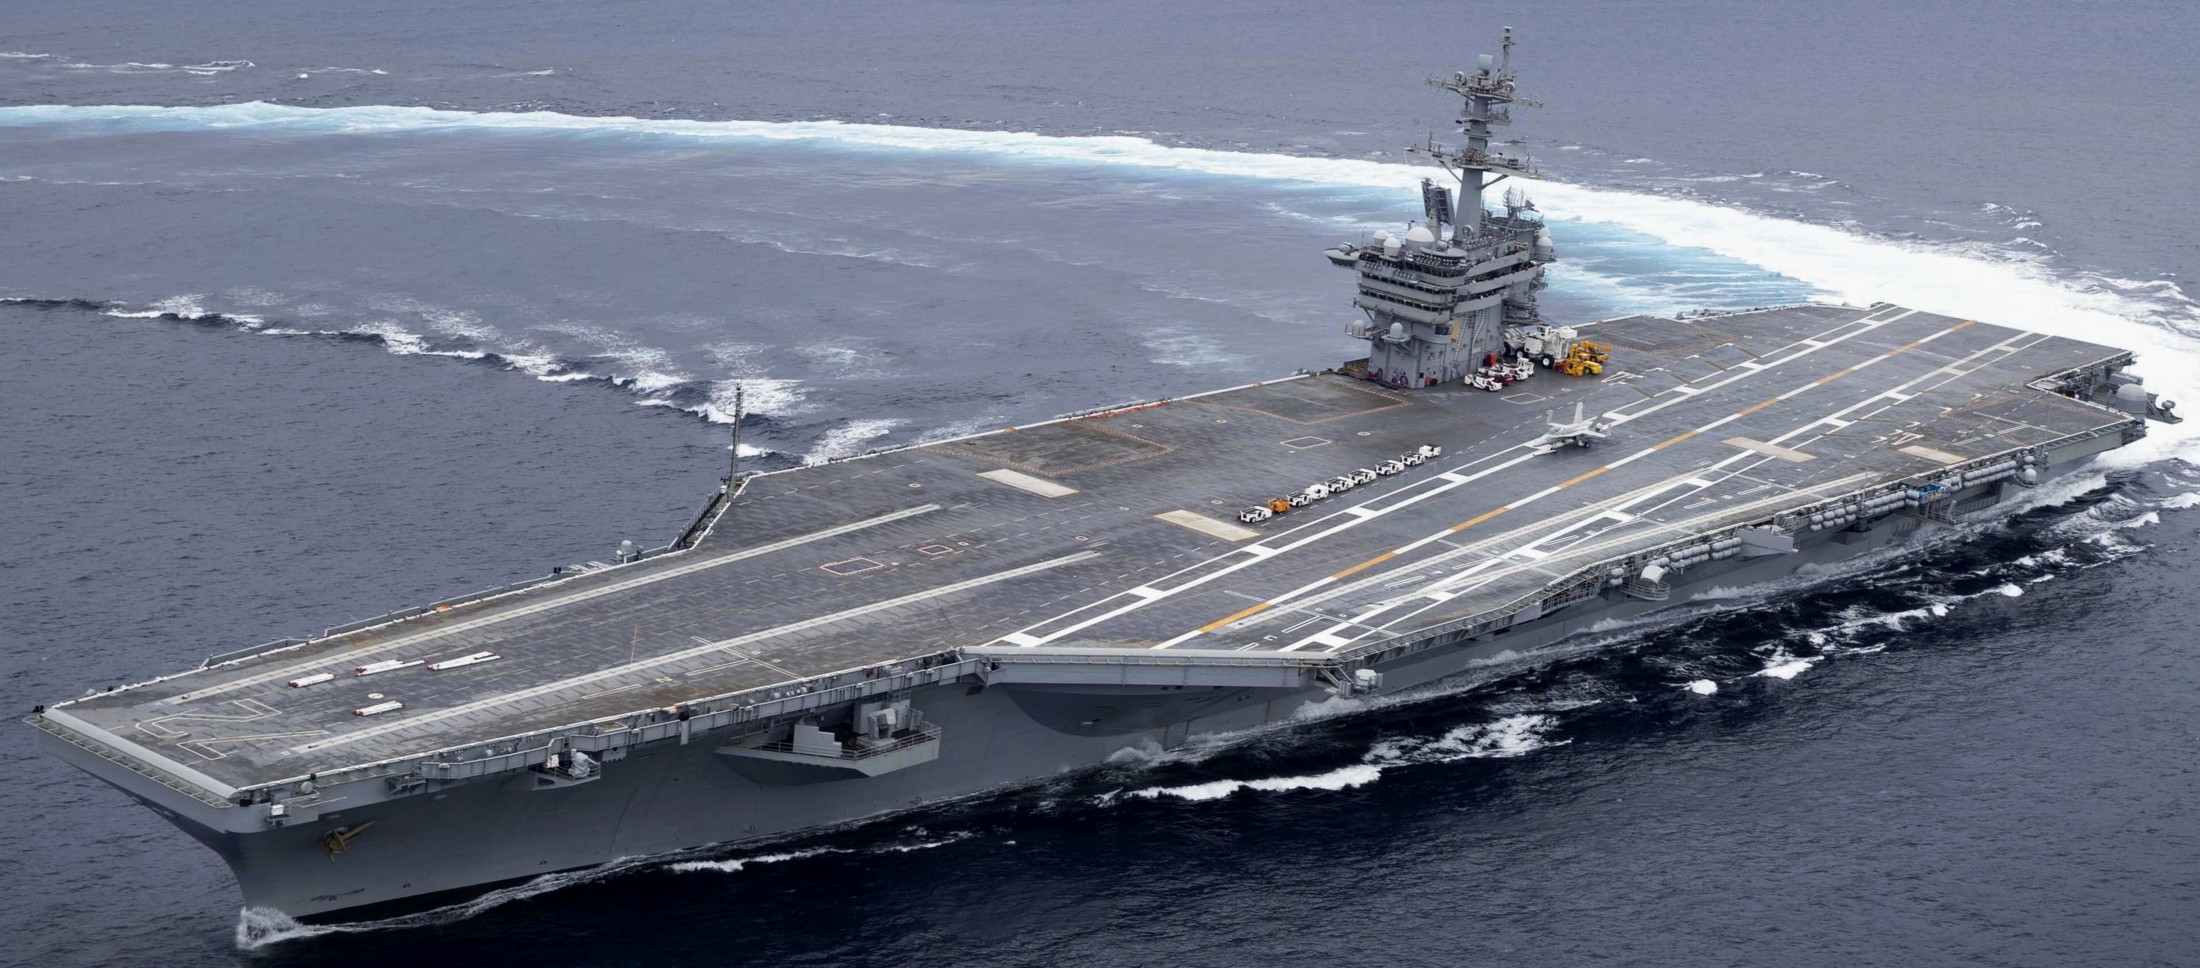 cvn-72 uss abraham lincoln nimitz class aircraft carrier us navy 49 trials after rcoh